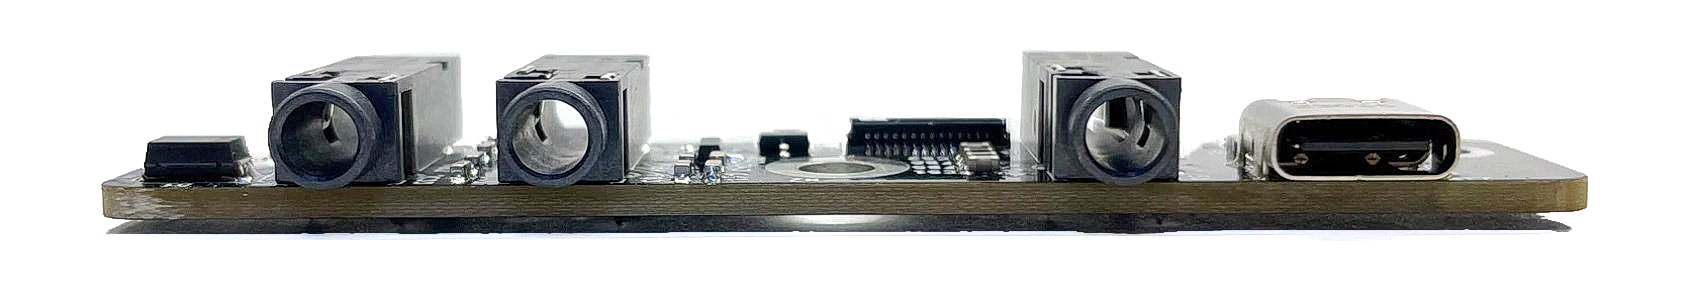 Icom IC 705 USB-C Steuerplatine – Einfaches Upgrade!